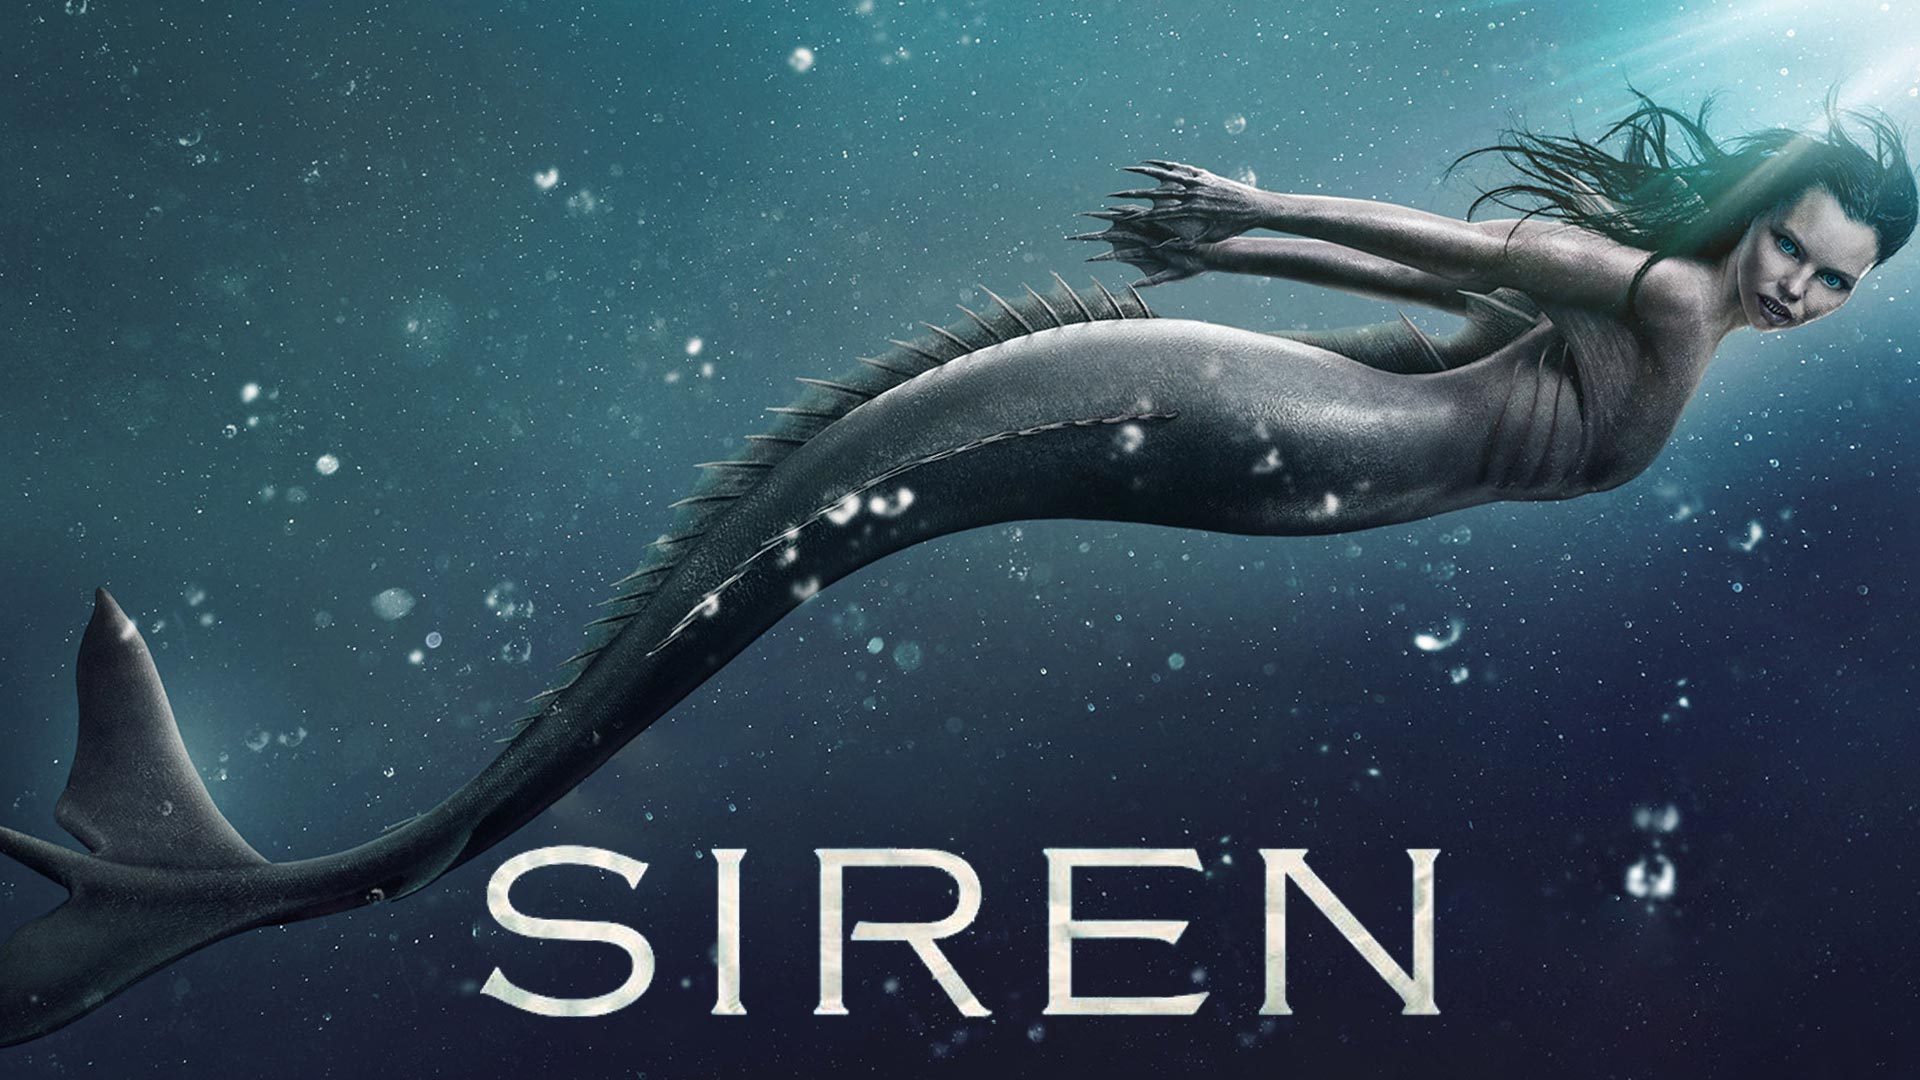 Siren Season 2